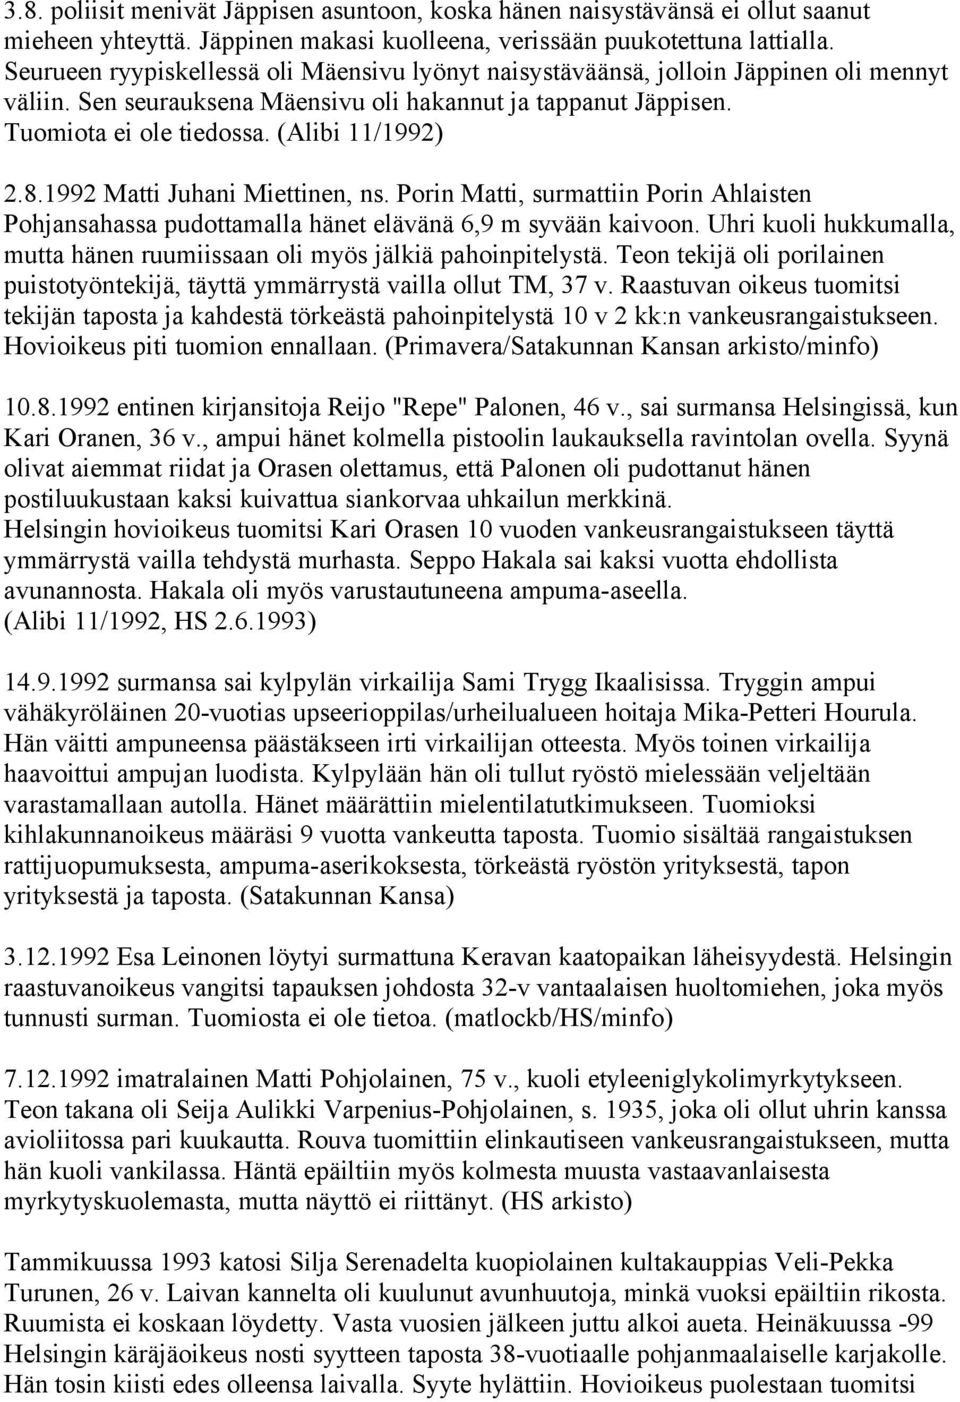 8.1992 Matti Juhani Miettinen, ns. Porin Matti, surmattiin Porin Ahlaisten Pohjansahassa pudottamalla hänet elävänä 6,9 m syvään kaivoon.